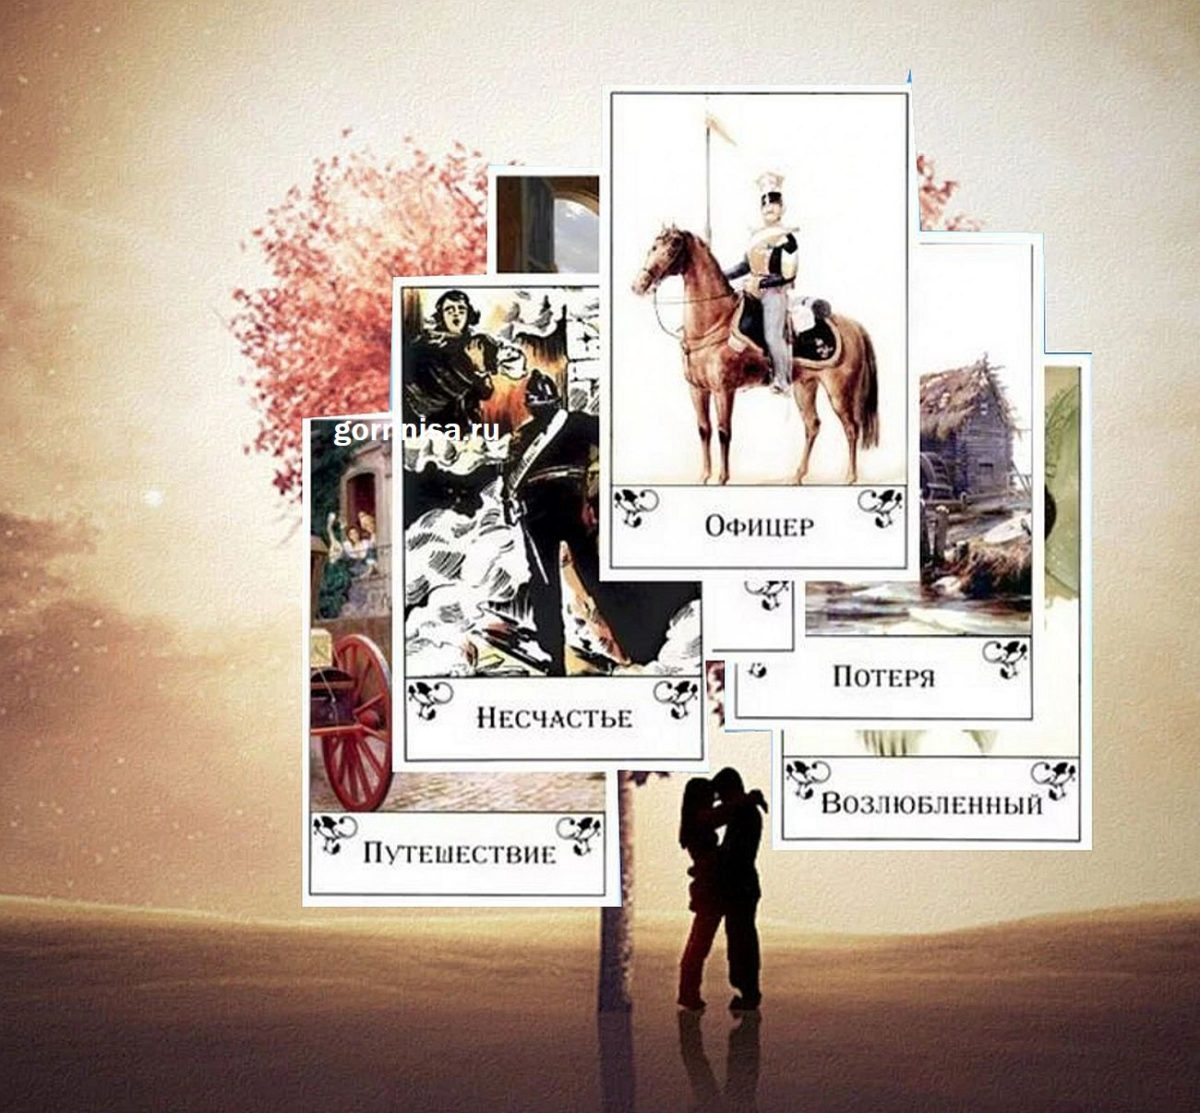 Оракул Цыганских карт - на любимого человека, любовь и отношения